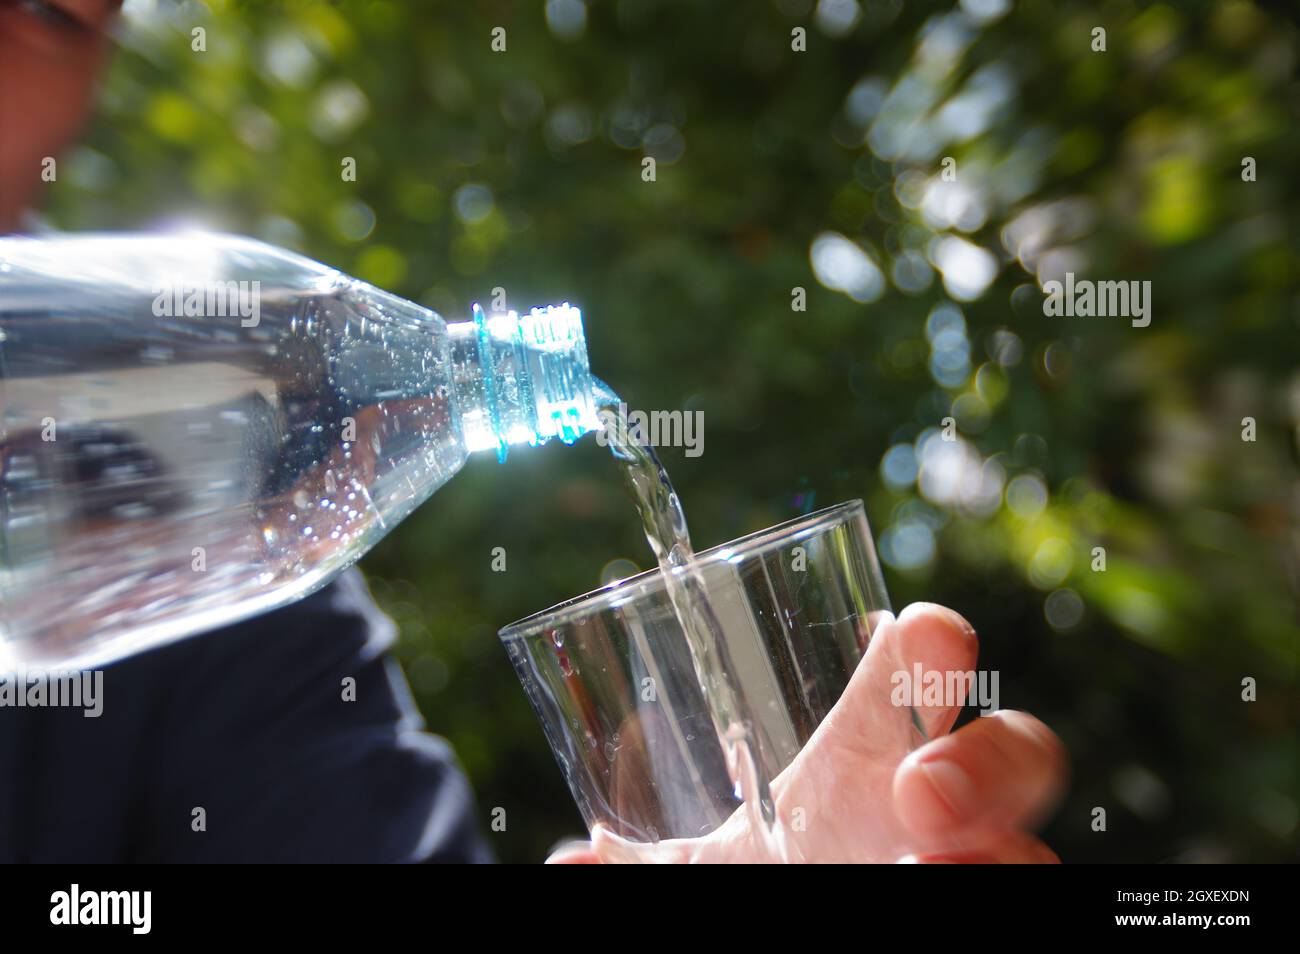 Wasser in ein Glas in der Hand mit Garten im Hintergrund gegossen. Erfrischung mit sauberem, natürlichem Mineralwasser aus einer Plastikflasche. Stockfoto